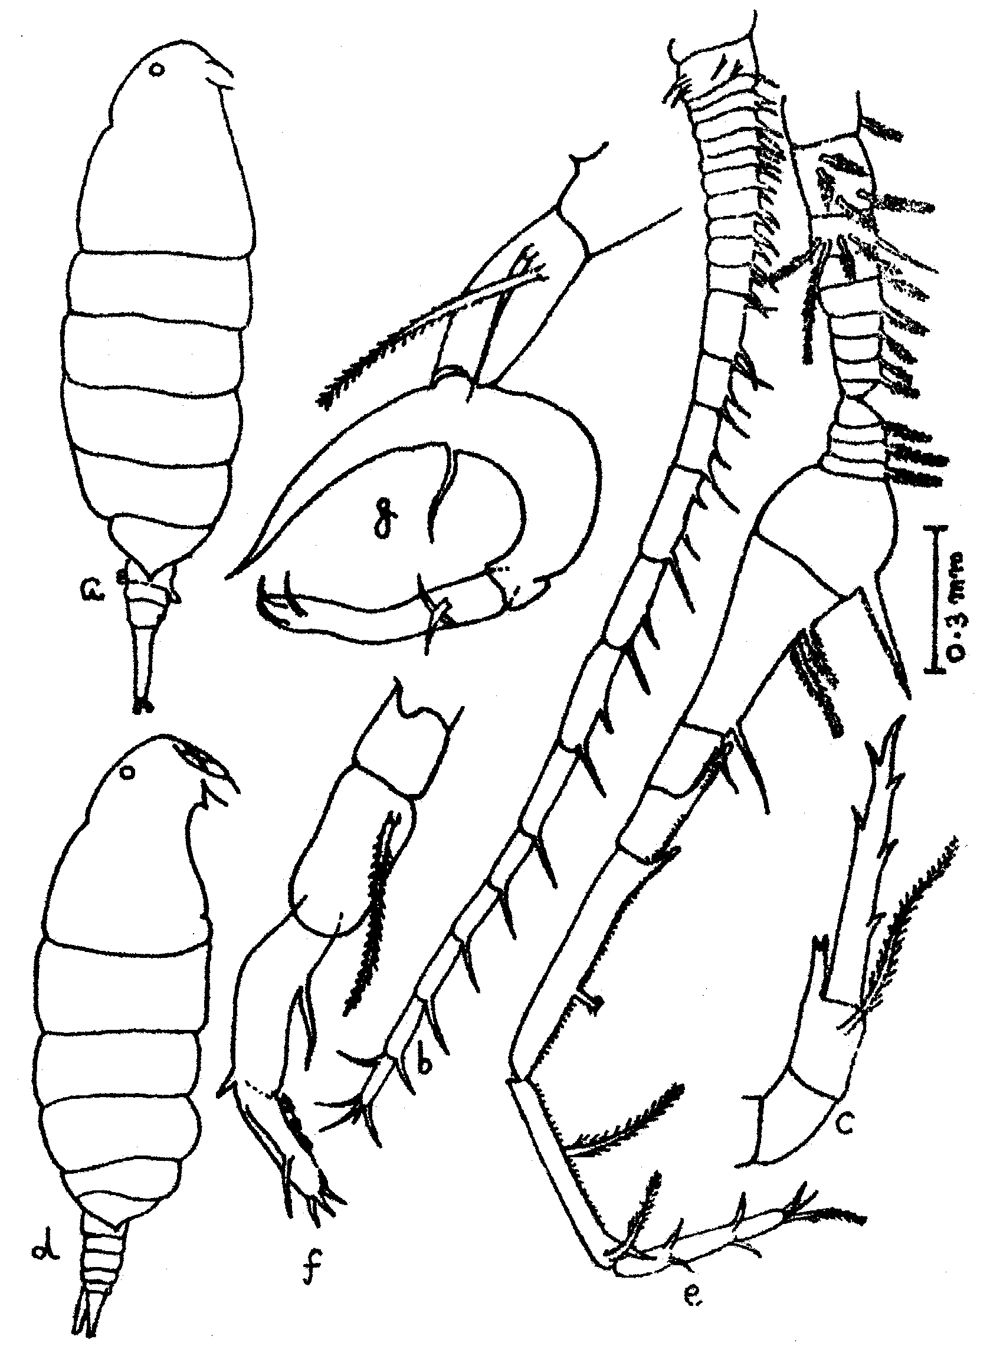 Espèce Pontella karachiensis - Planche 9 de figures morphologiques